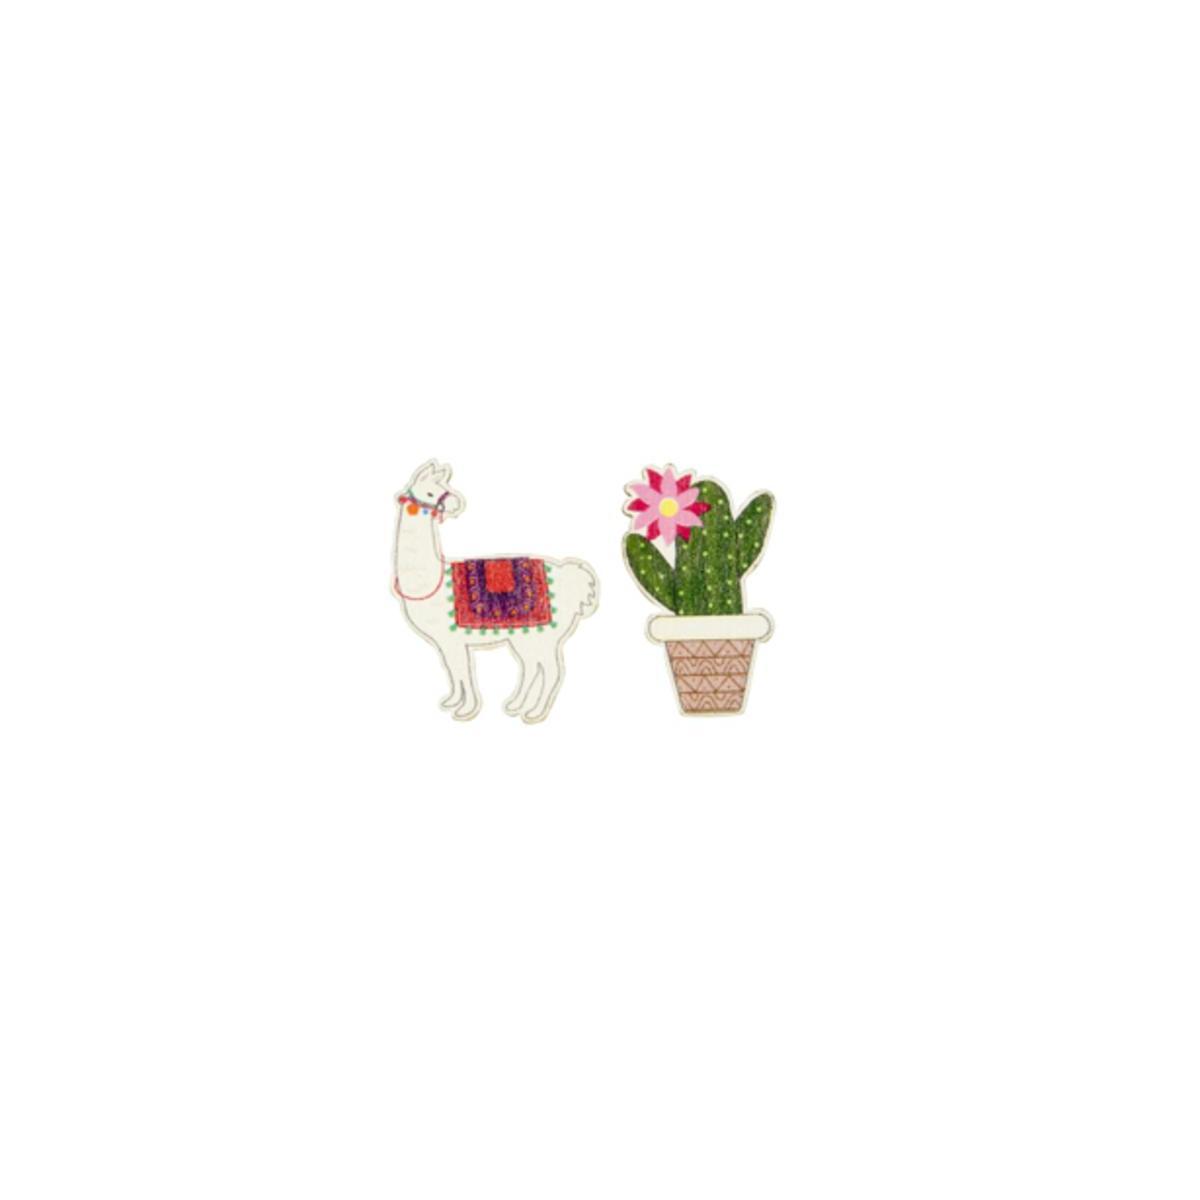 Confetti bois lama cactus (x 9) - 3.5 x 4 cm - Multicolore